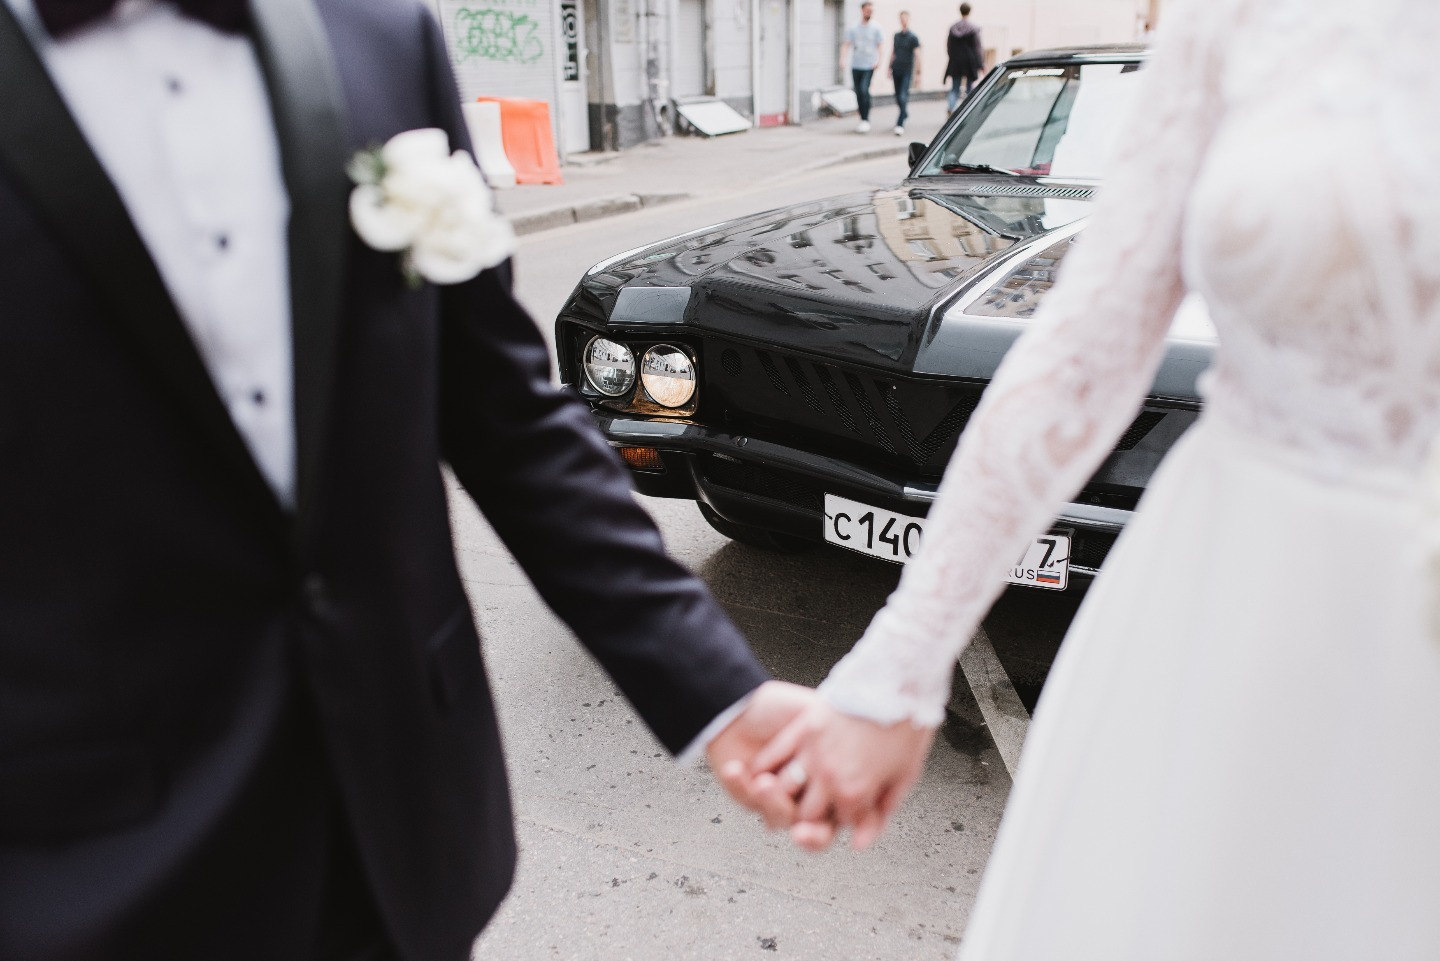 Благородная лаконичность: свадьба в центре Москвы